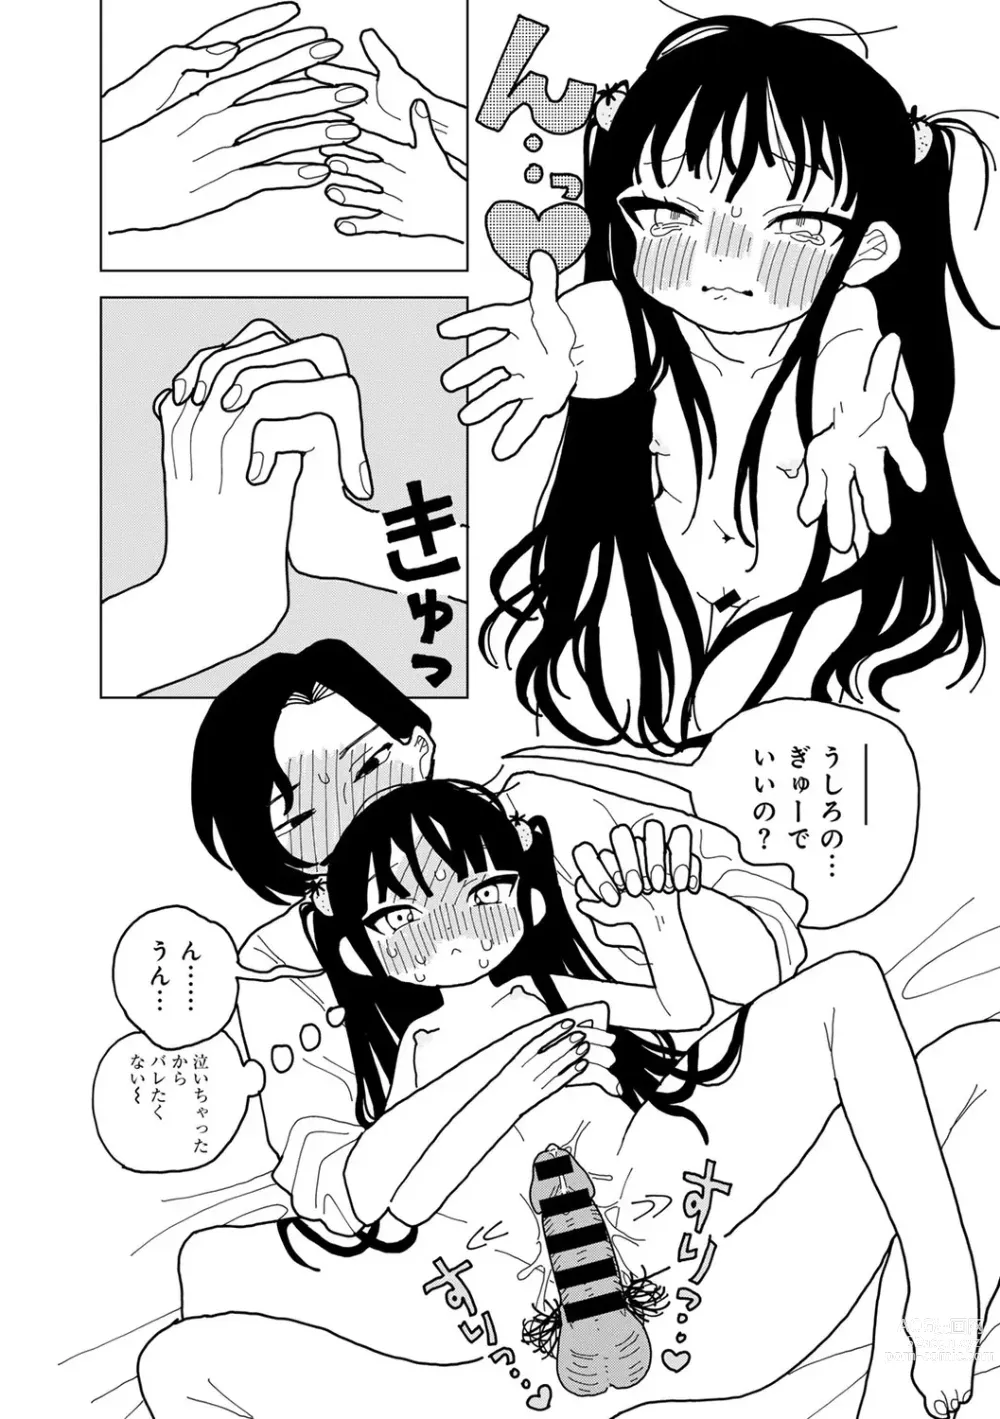 Page 185 of manga COMIC kisshug vol.3